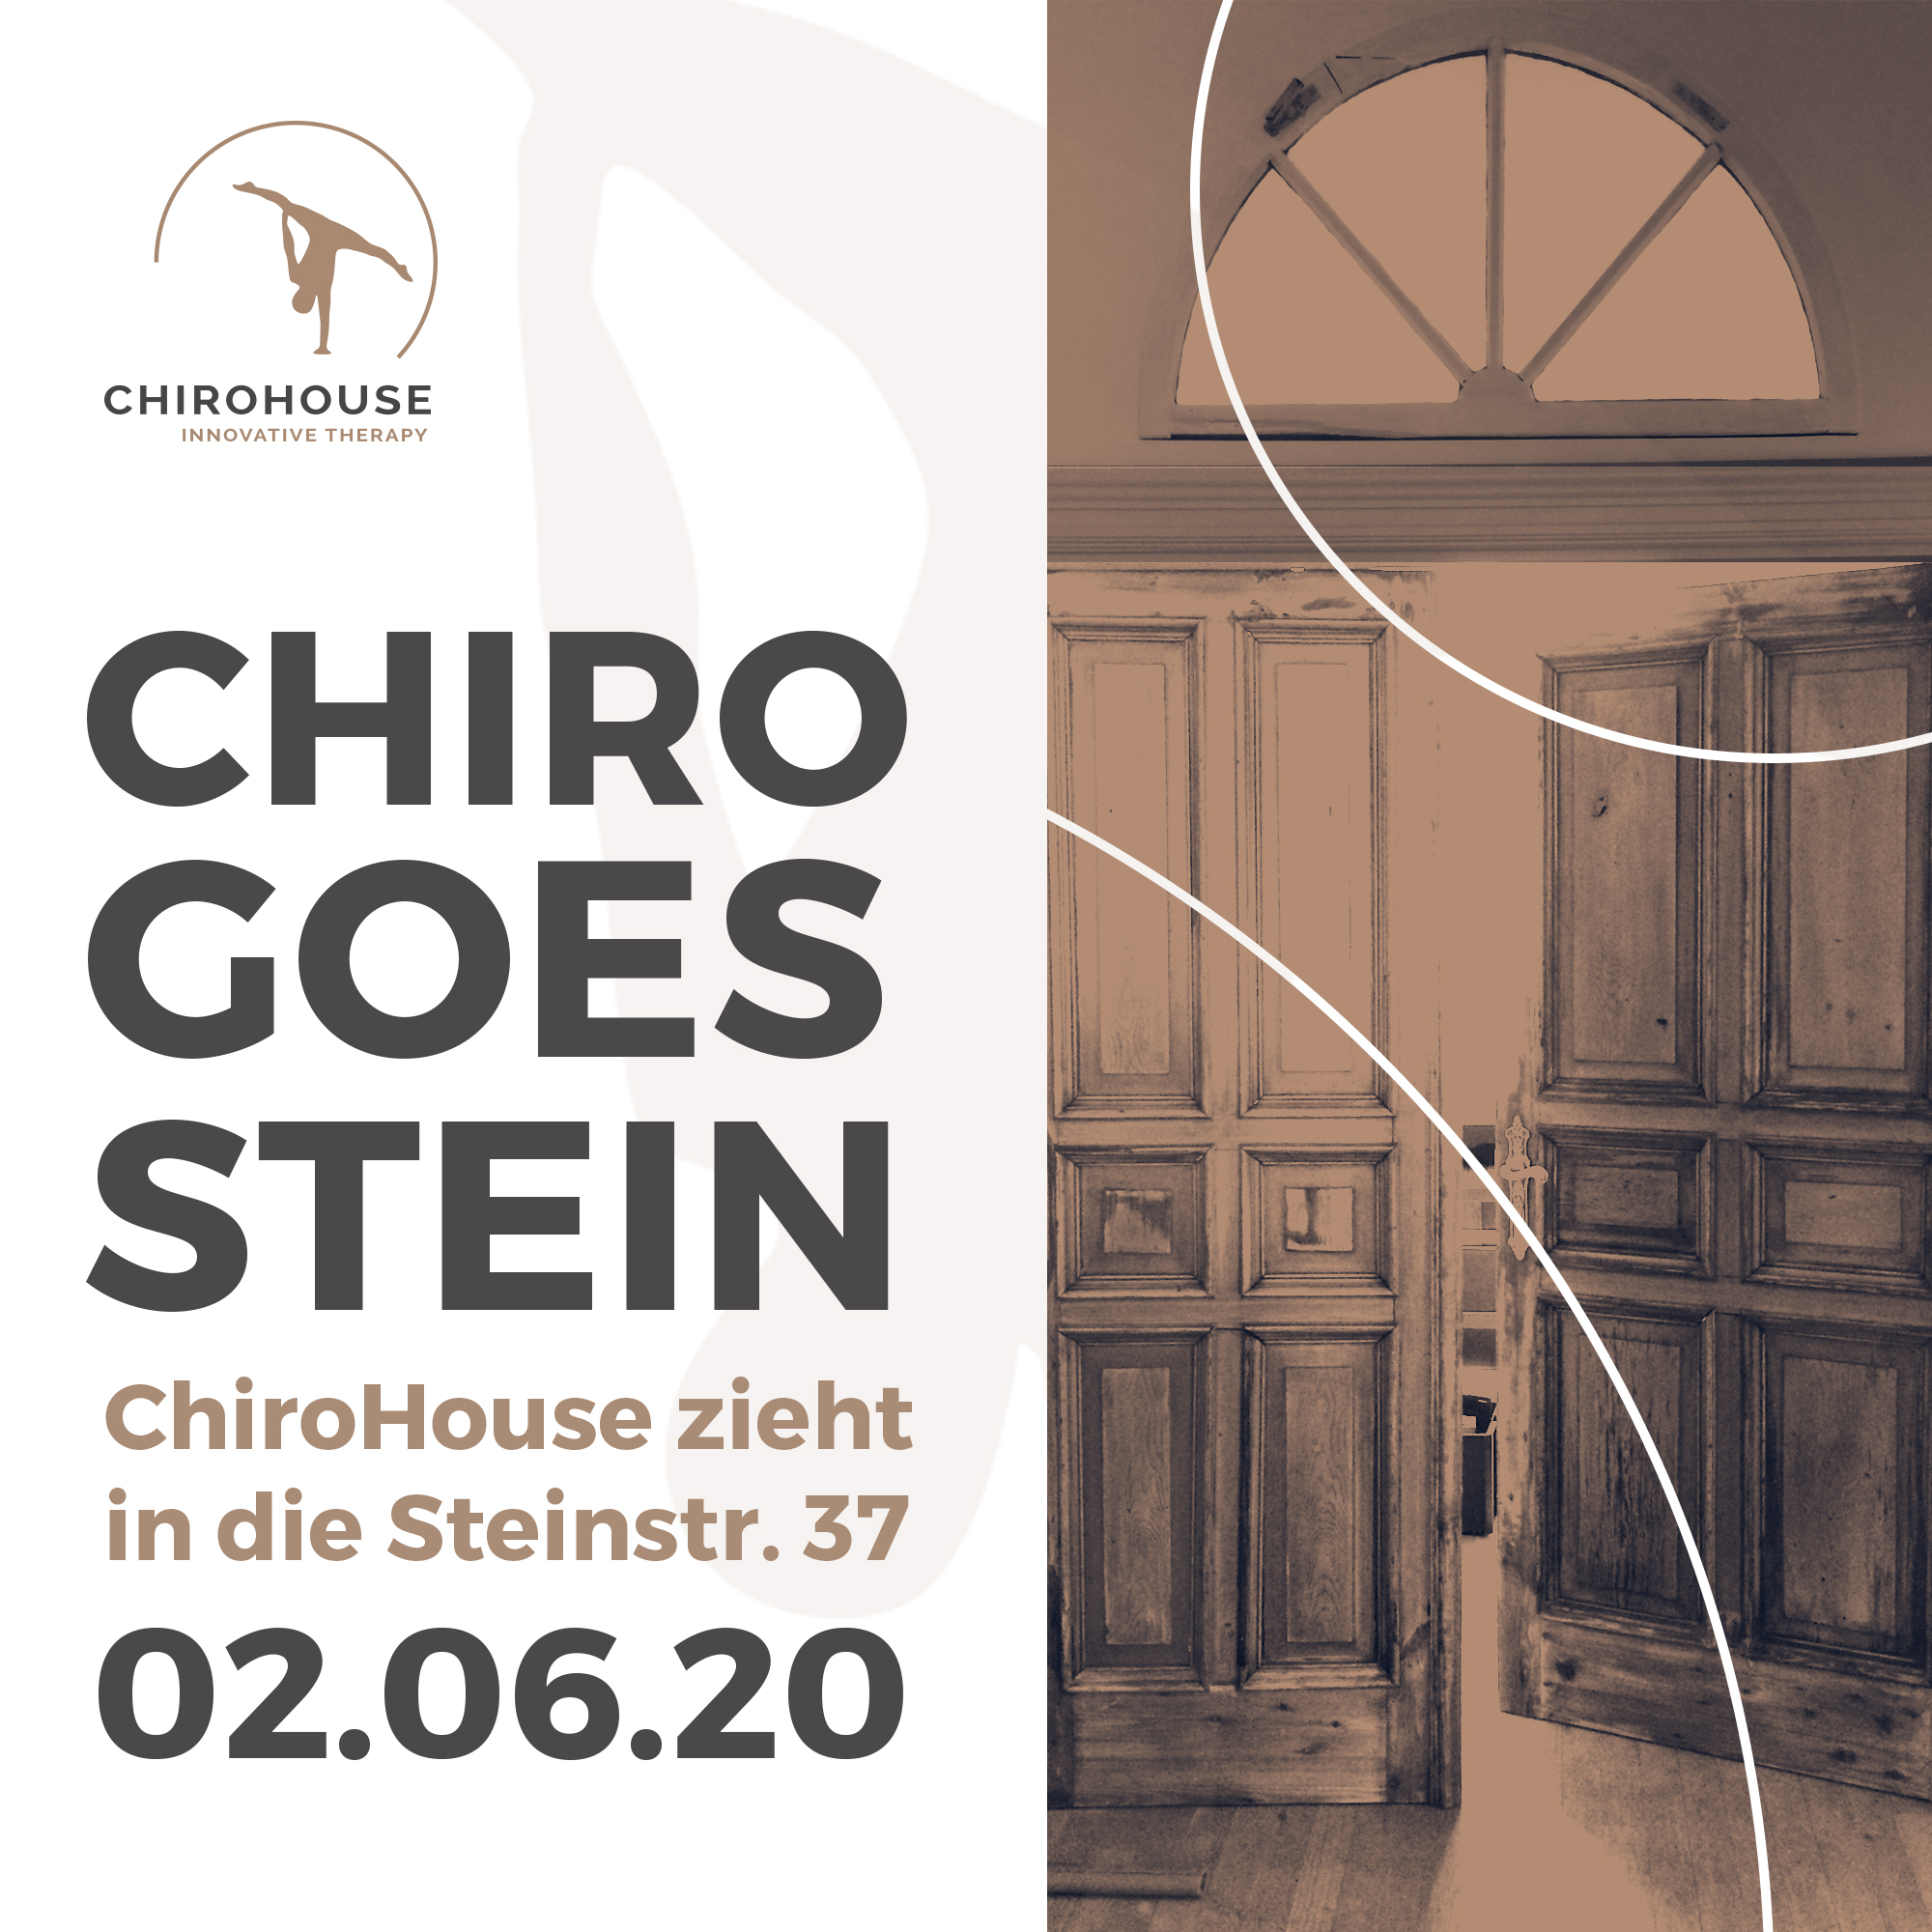 Das ChiroHouse ist seit dem 02.06.2020 in der Steinstraße 37 zu finden.